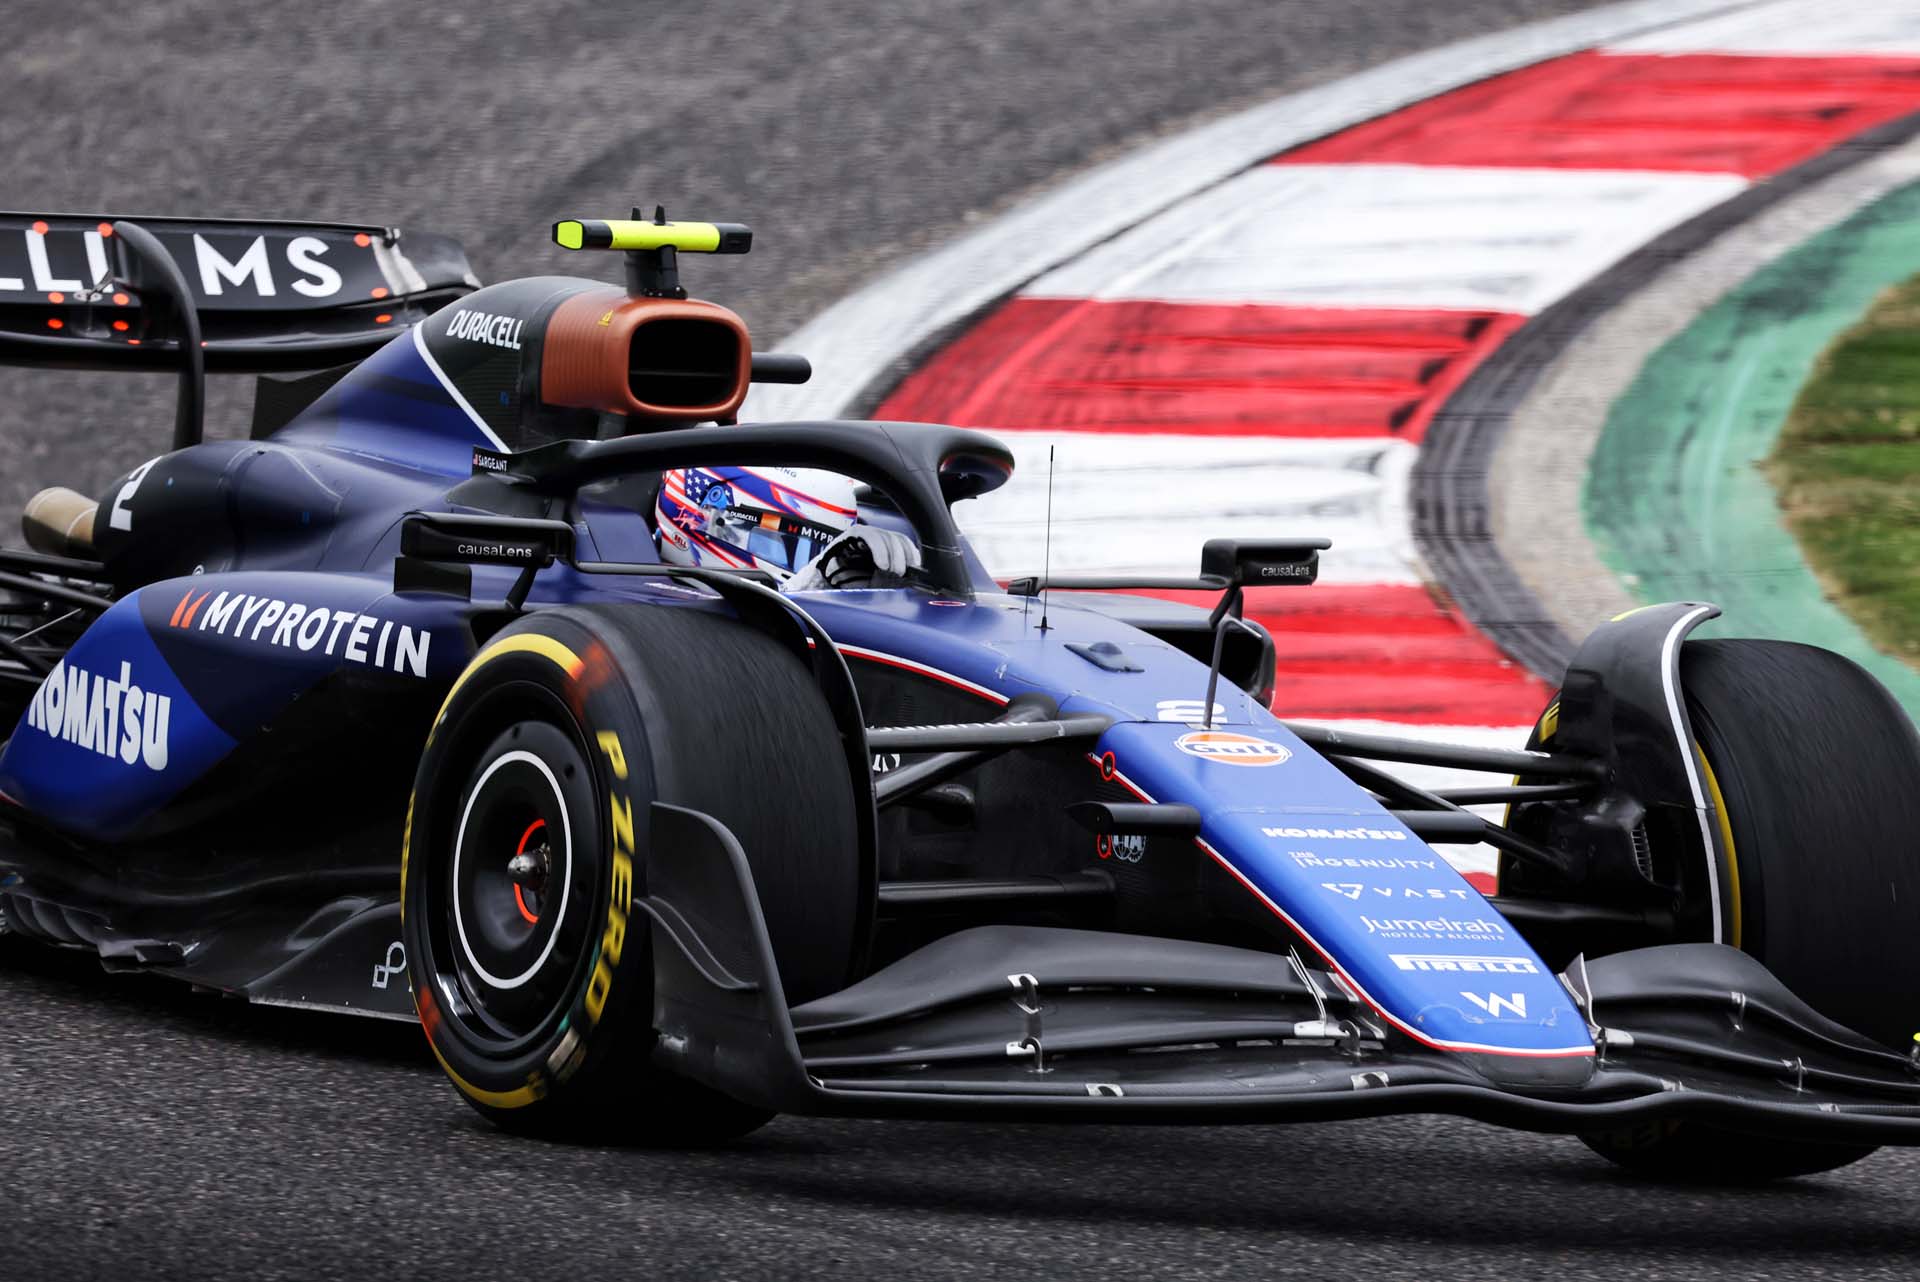 A Williams F1 csapata jelentős erősítéseket hajt végre a személyzeten